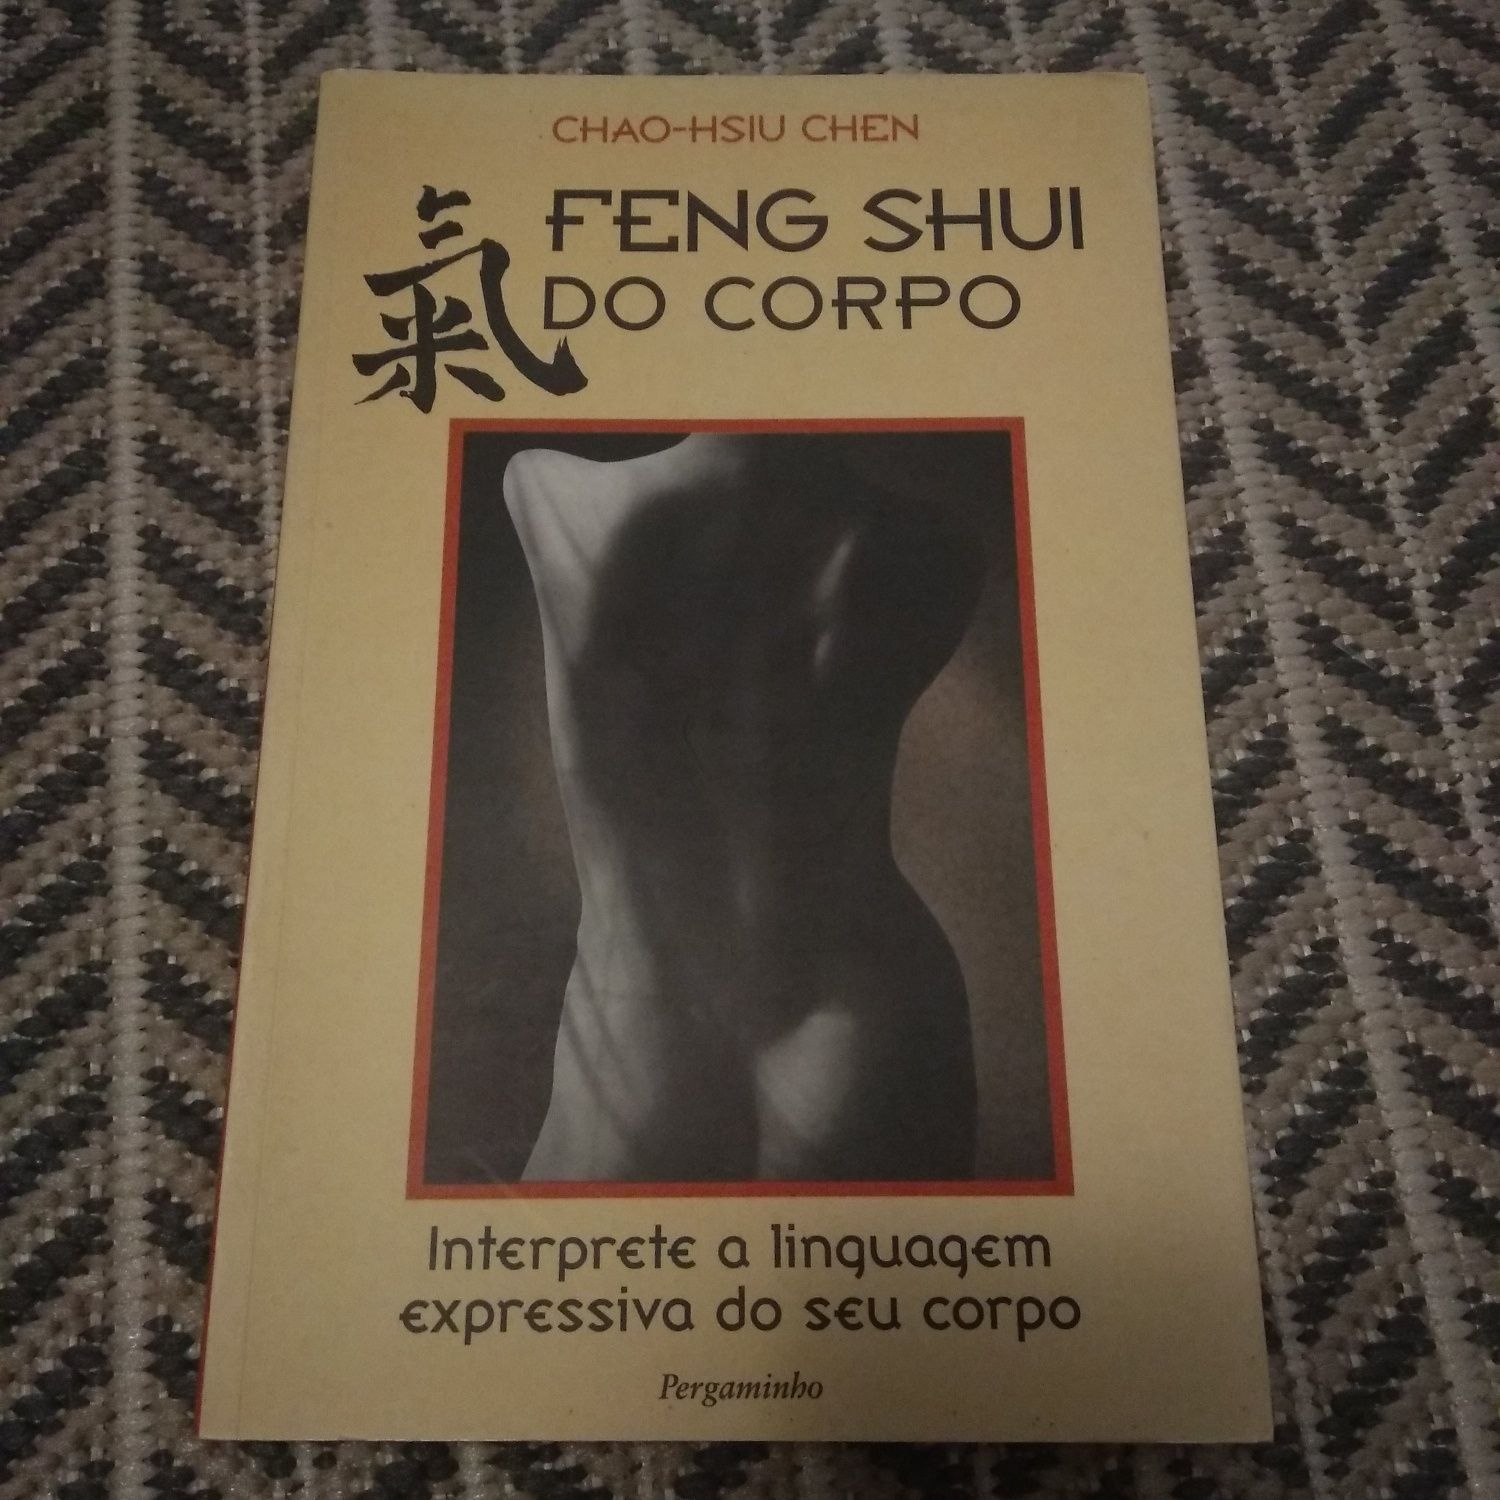 Livro "Feng shui do corpo" Chao-hsiu Chen